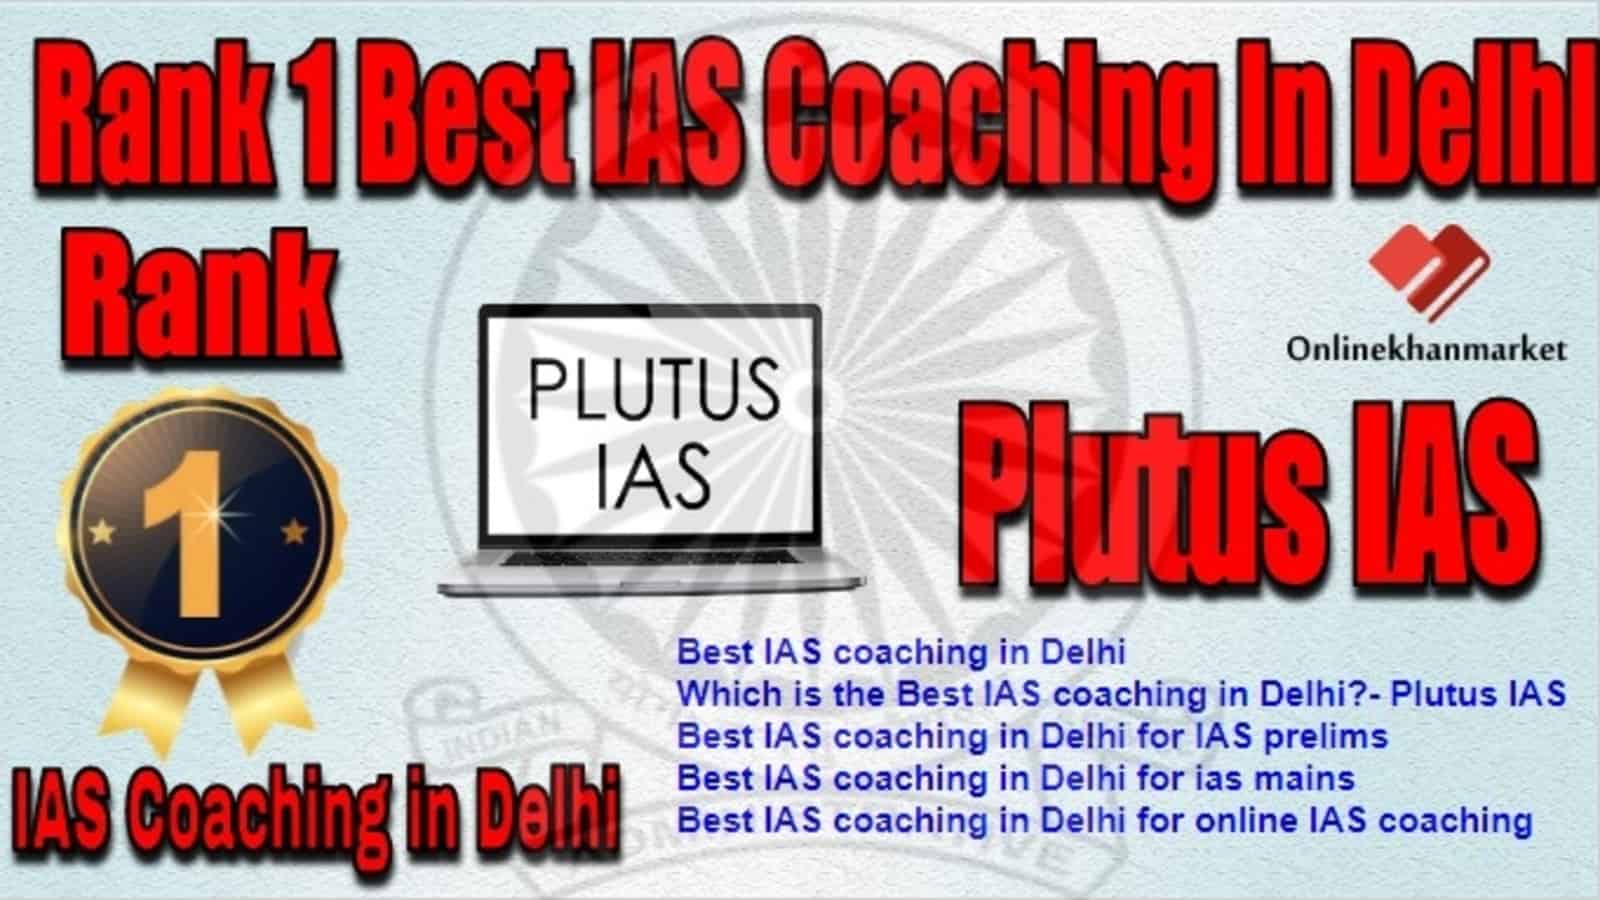 Rank 1 Best IAS Coaching in Delhi Plutus IAS